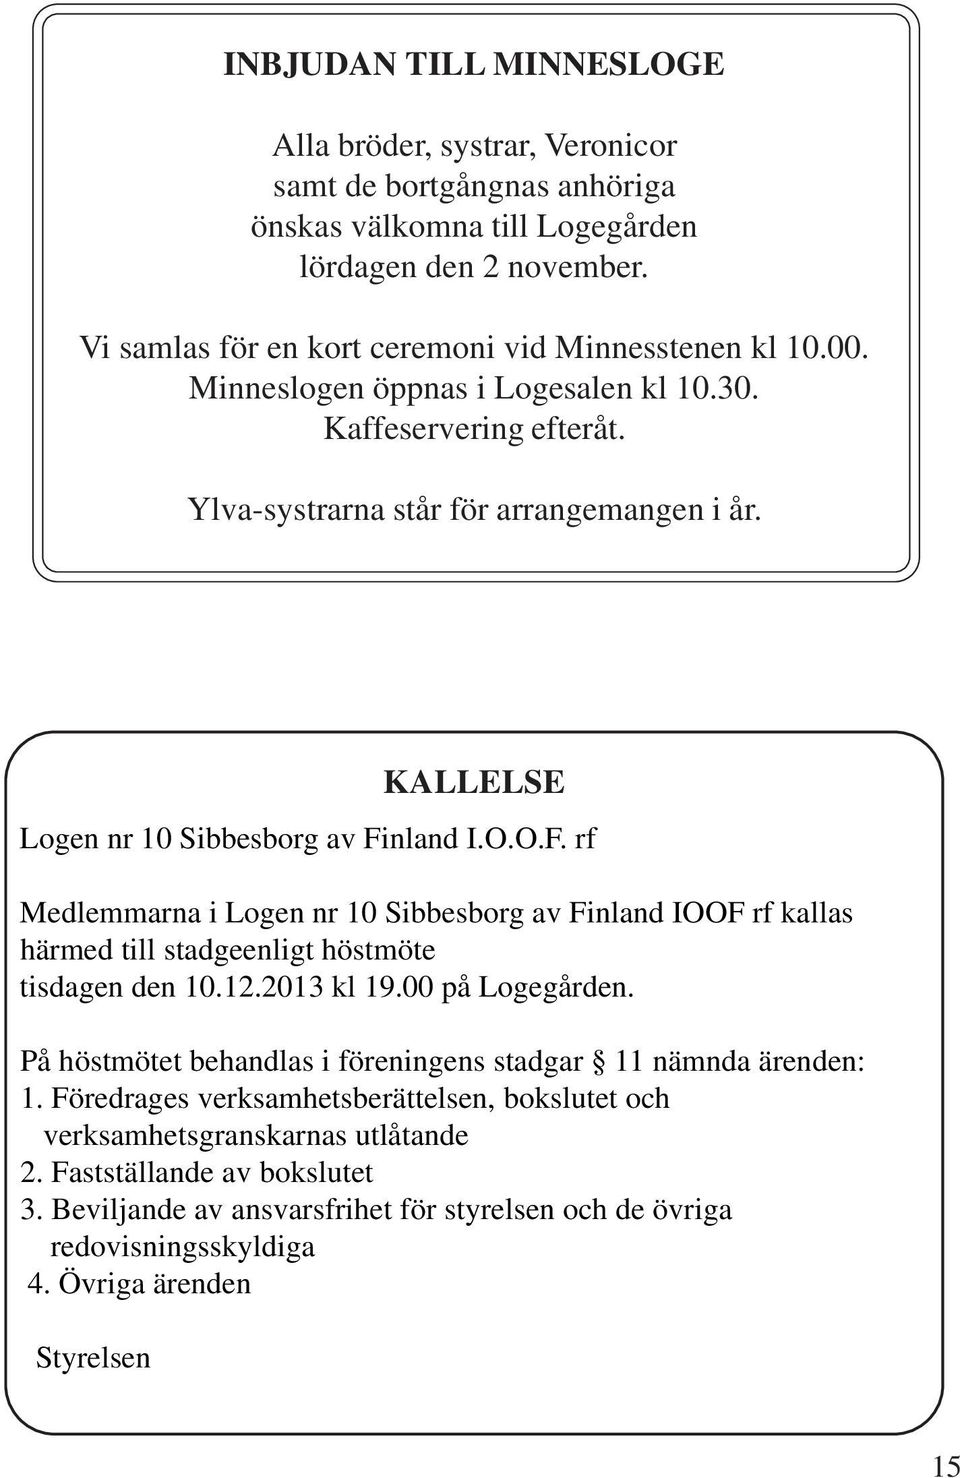 nland I.O.O.F. rf Medlemmarna i Logen nr 10 Sibbesborg av Finland IOOF rf kallas härmed till stadgeenligt höstmöte tisdagen den 10.12.2013 kl 19.00 på Logegården.